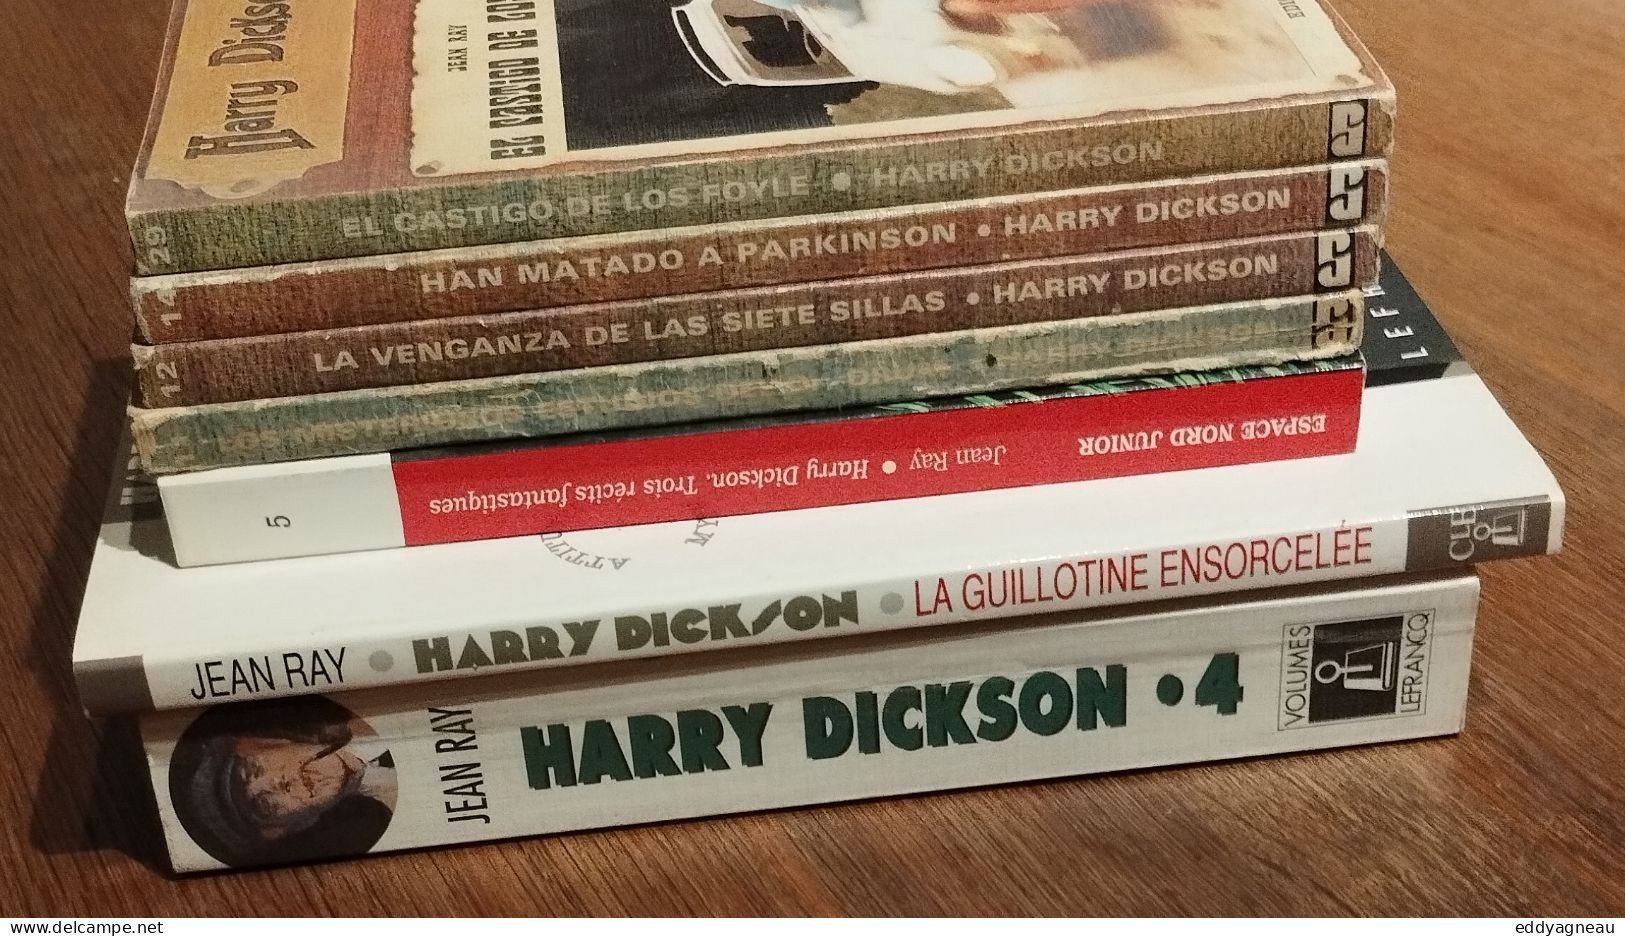 Lot Harry Dickson - Jean ray